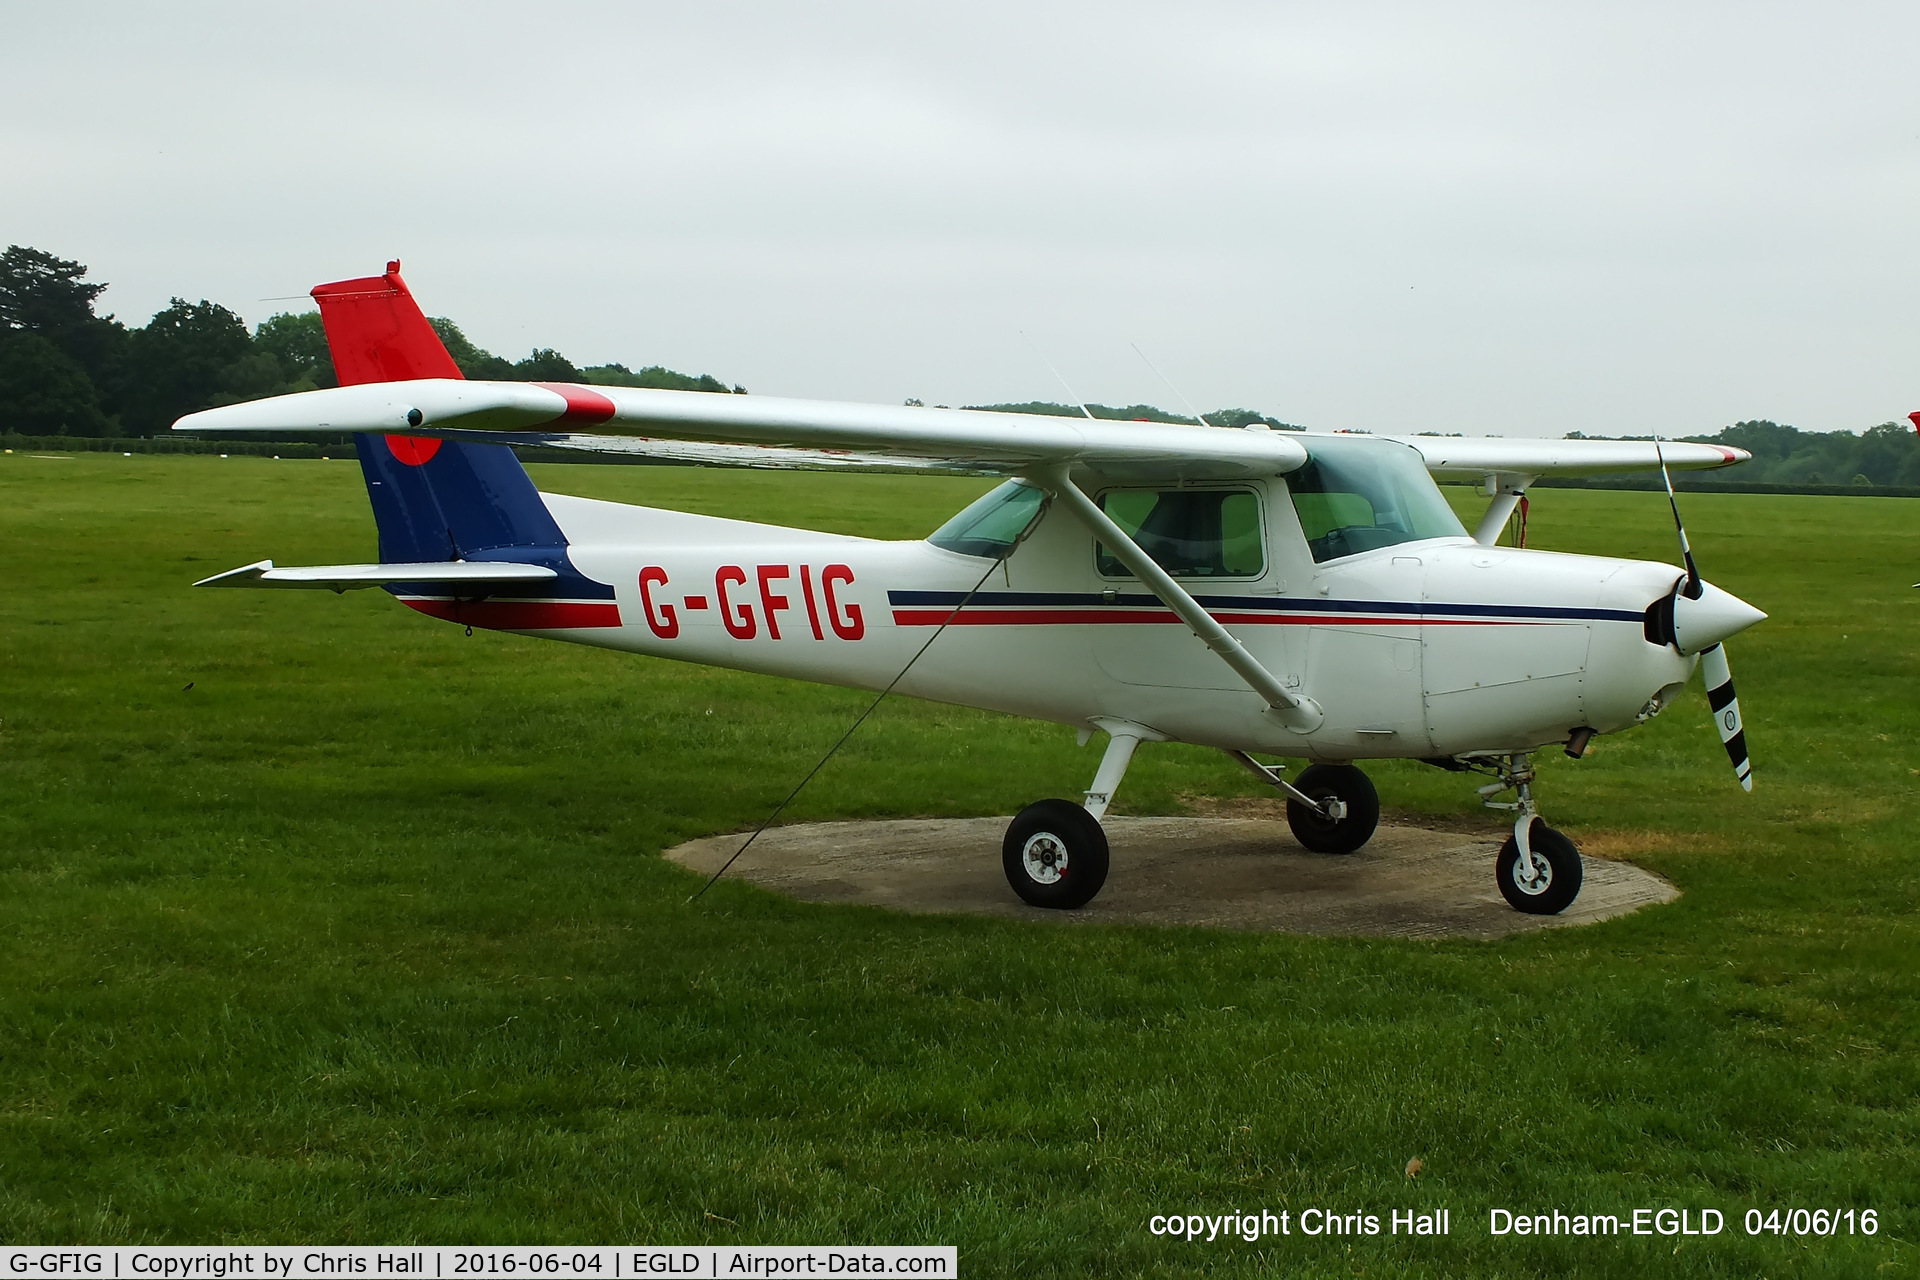 G-GFIG, 1978 Cessna 152 C/N 152-81625, at Denham